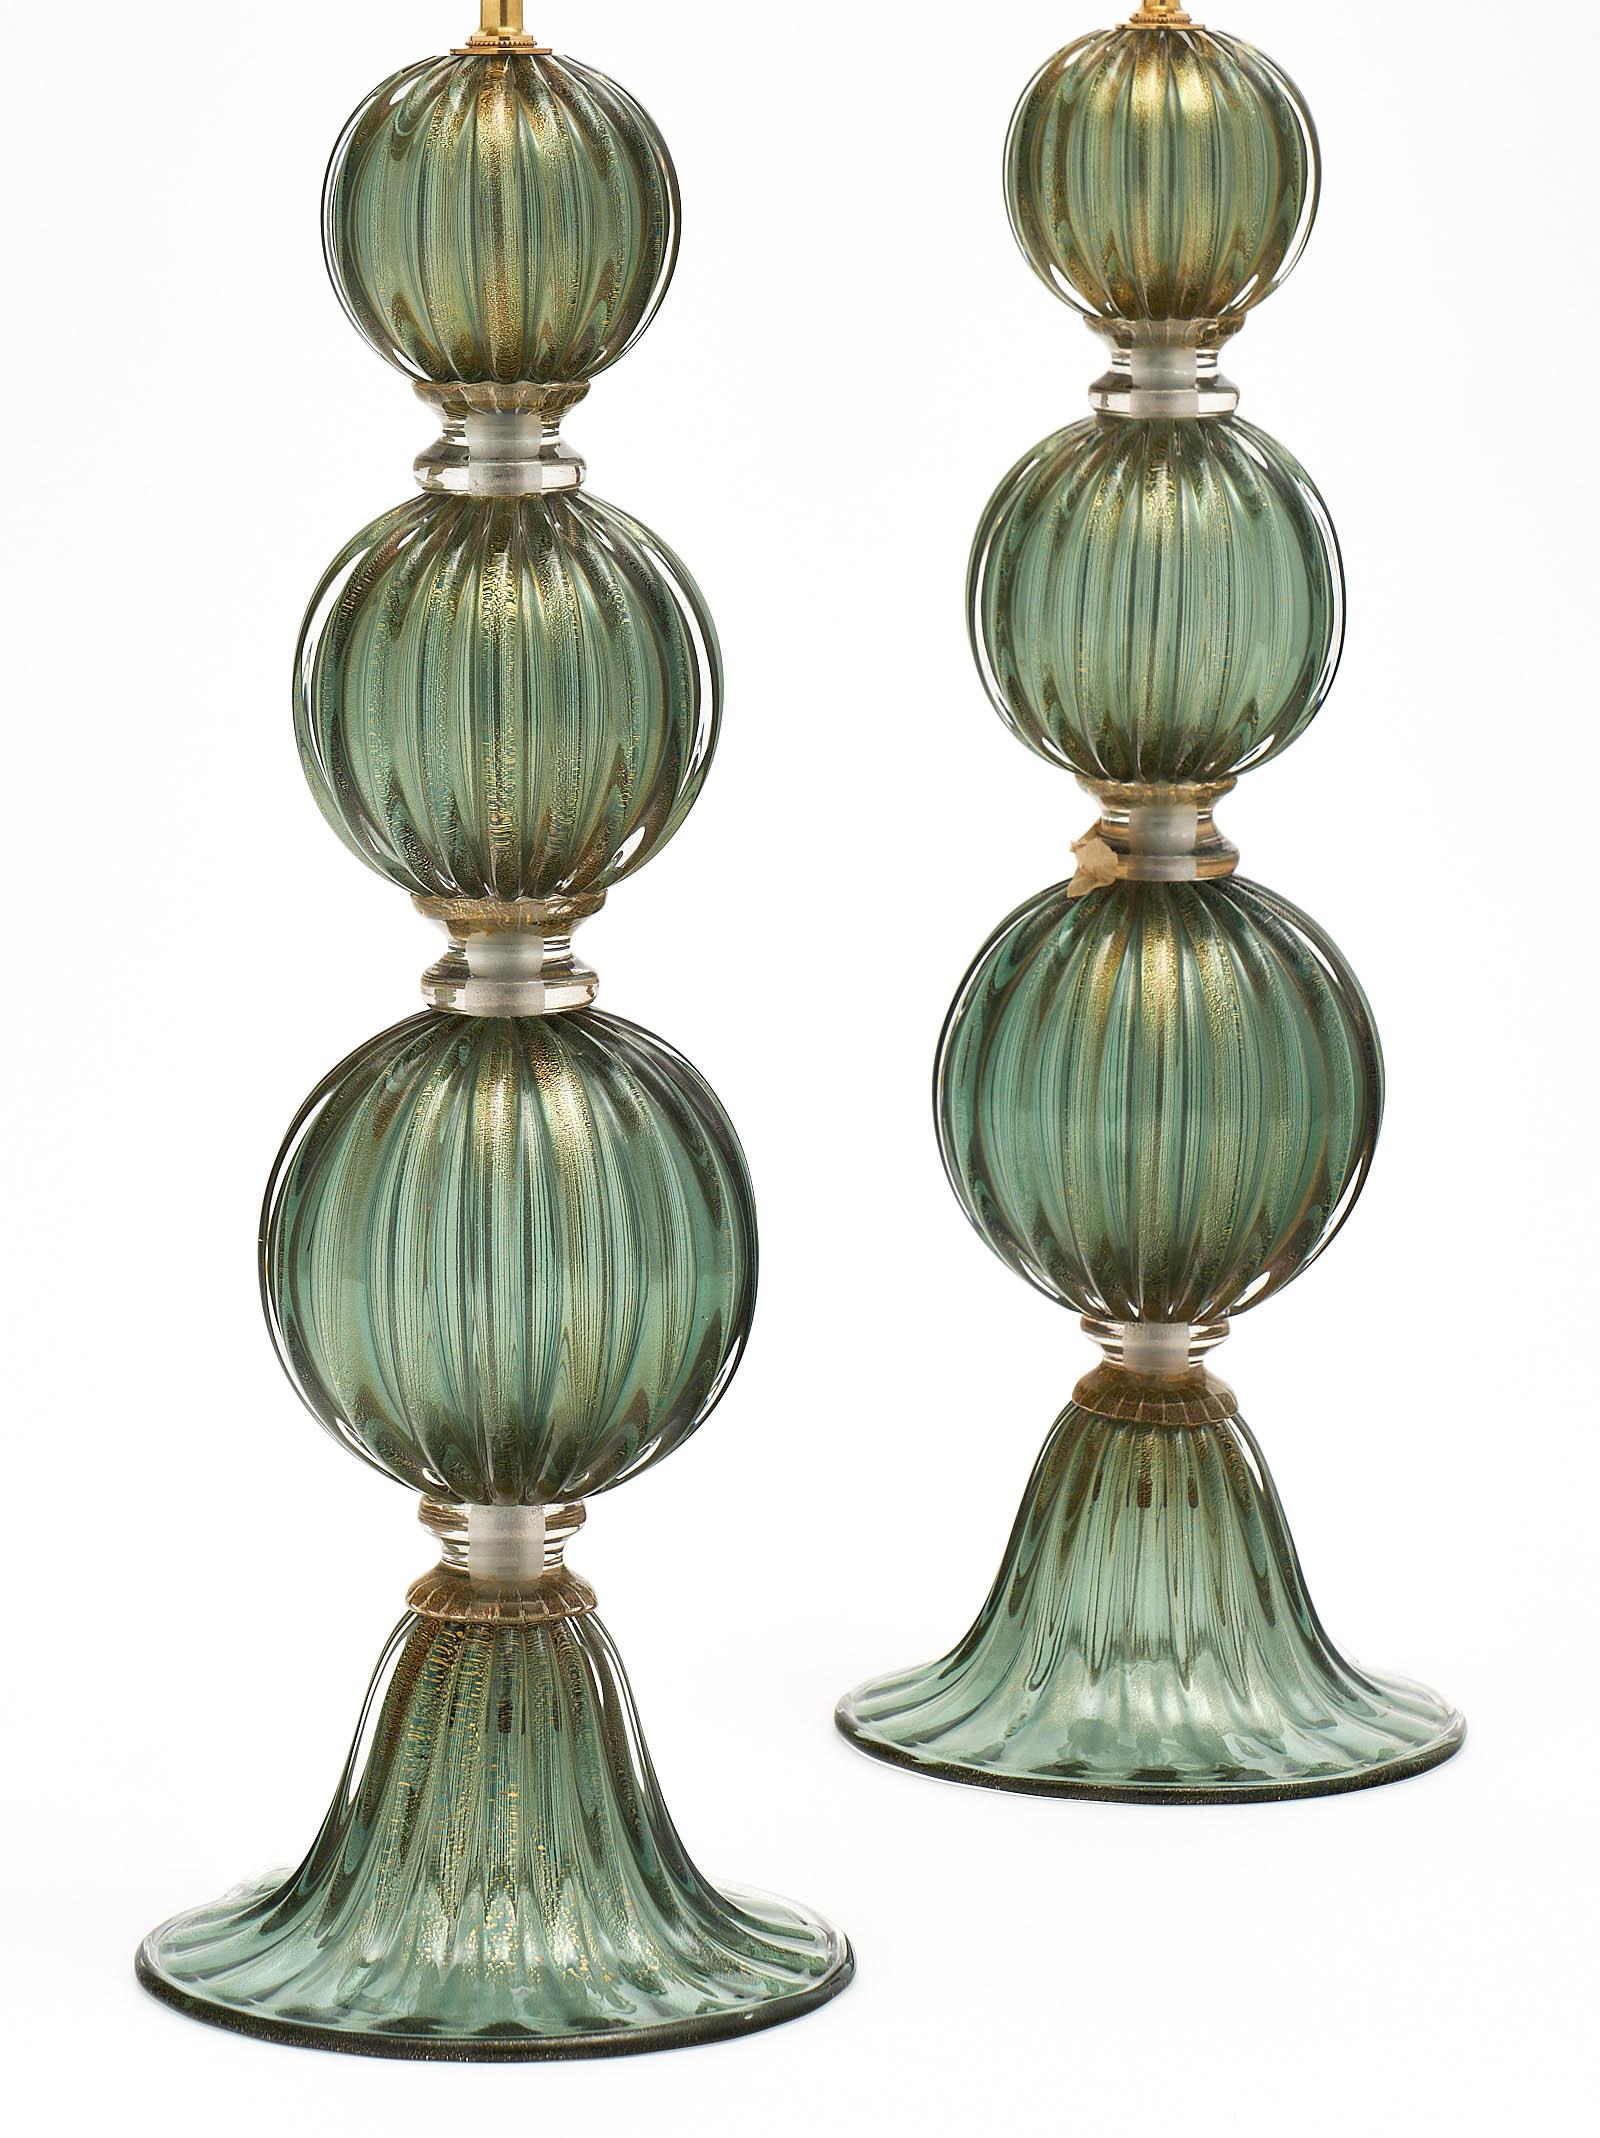 Grüne Avventurina-Lampen aus Murano-Glas mit vier mundgeblasenen Glassegmenten und einem geriffelten Sockel. Beim Avventurina-Verfahren werden 23-karätige Goldflecken in das Glas eingeschmolzen. Dieses Paar wurde für die US-Normen neu verkabelt. Die